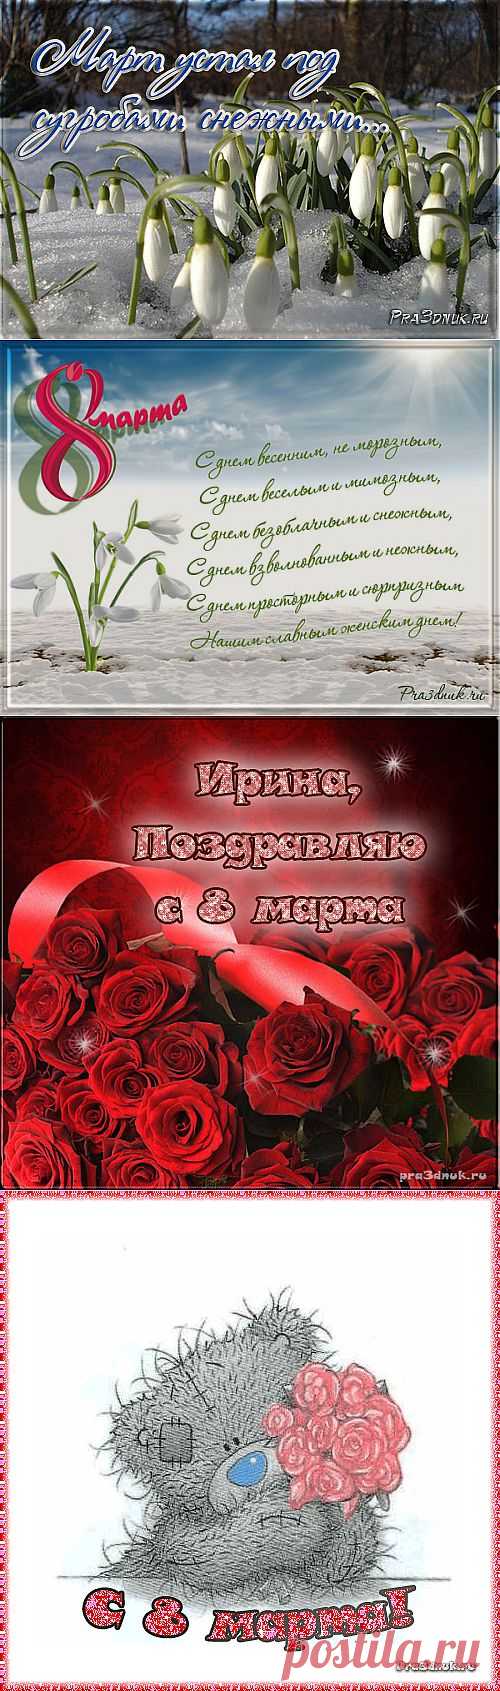 Международный женский день - 8 марта - Праздник сегодня, Стихи и поздравления - Открытки - pra3dnuk.ru